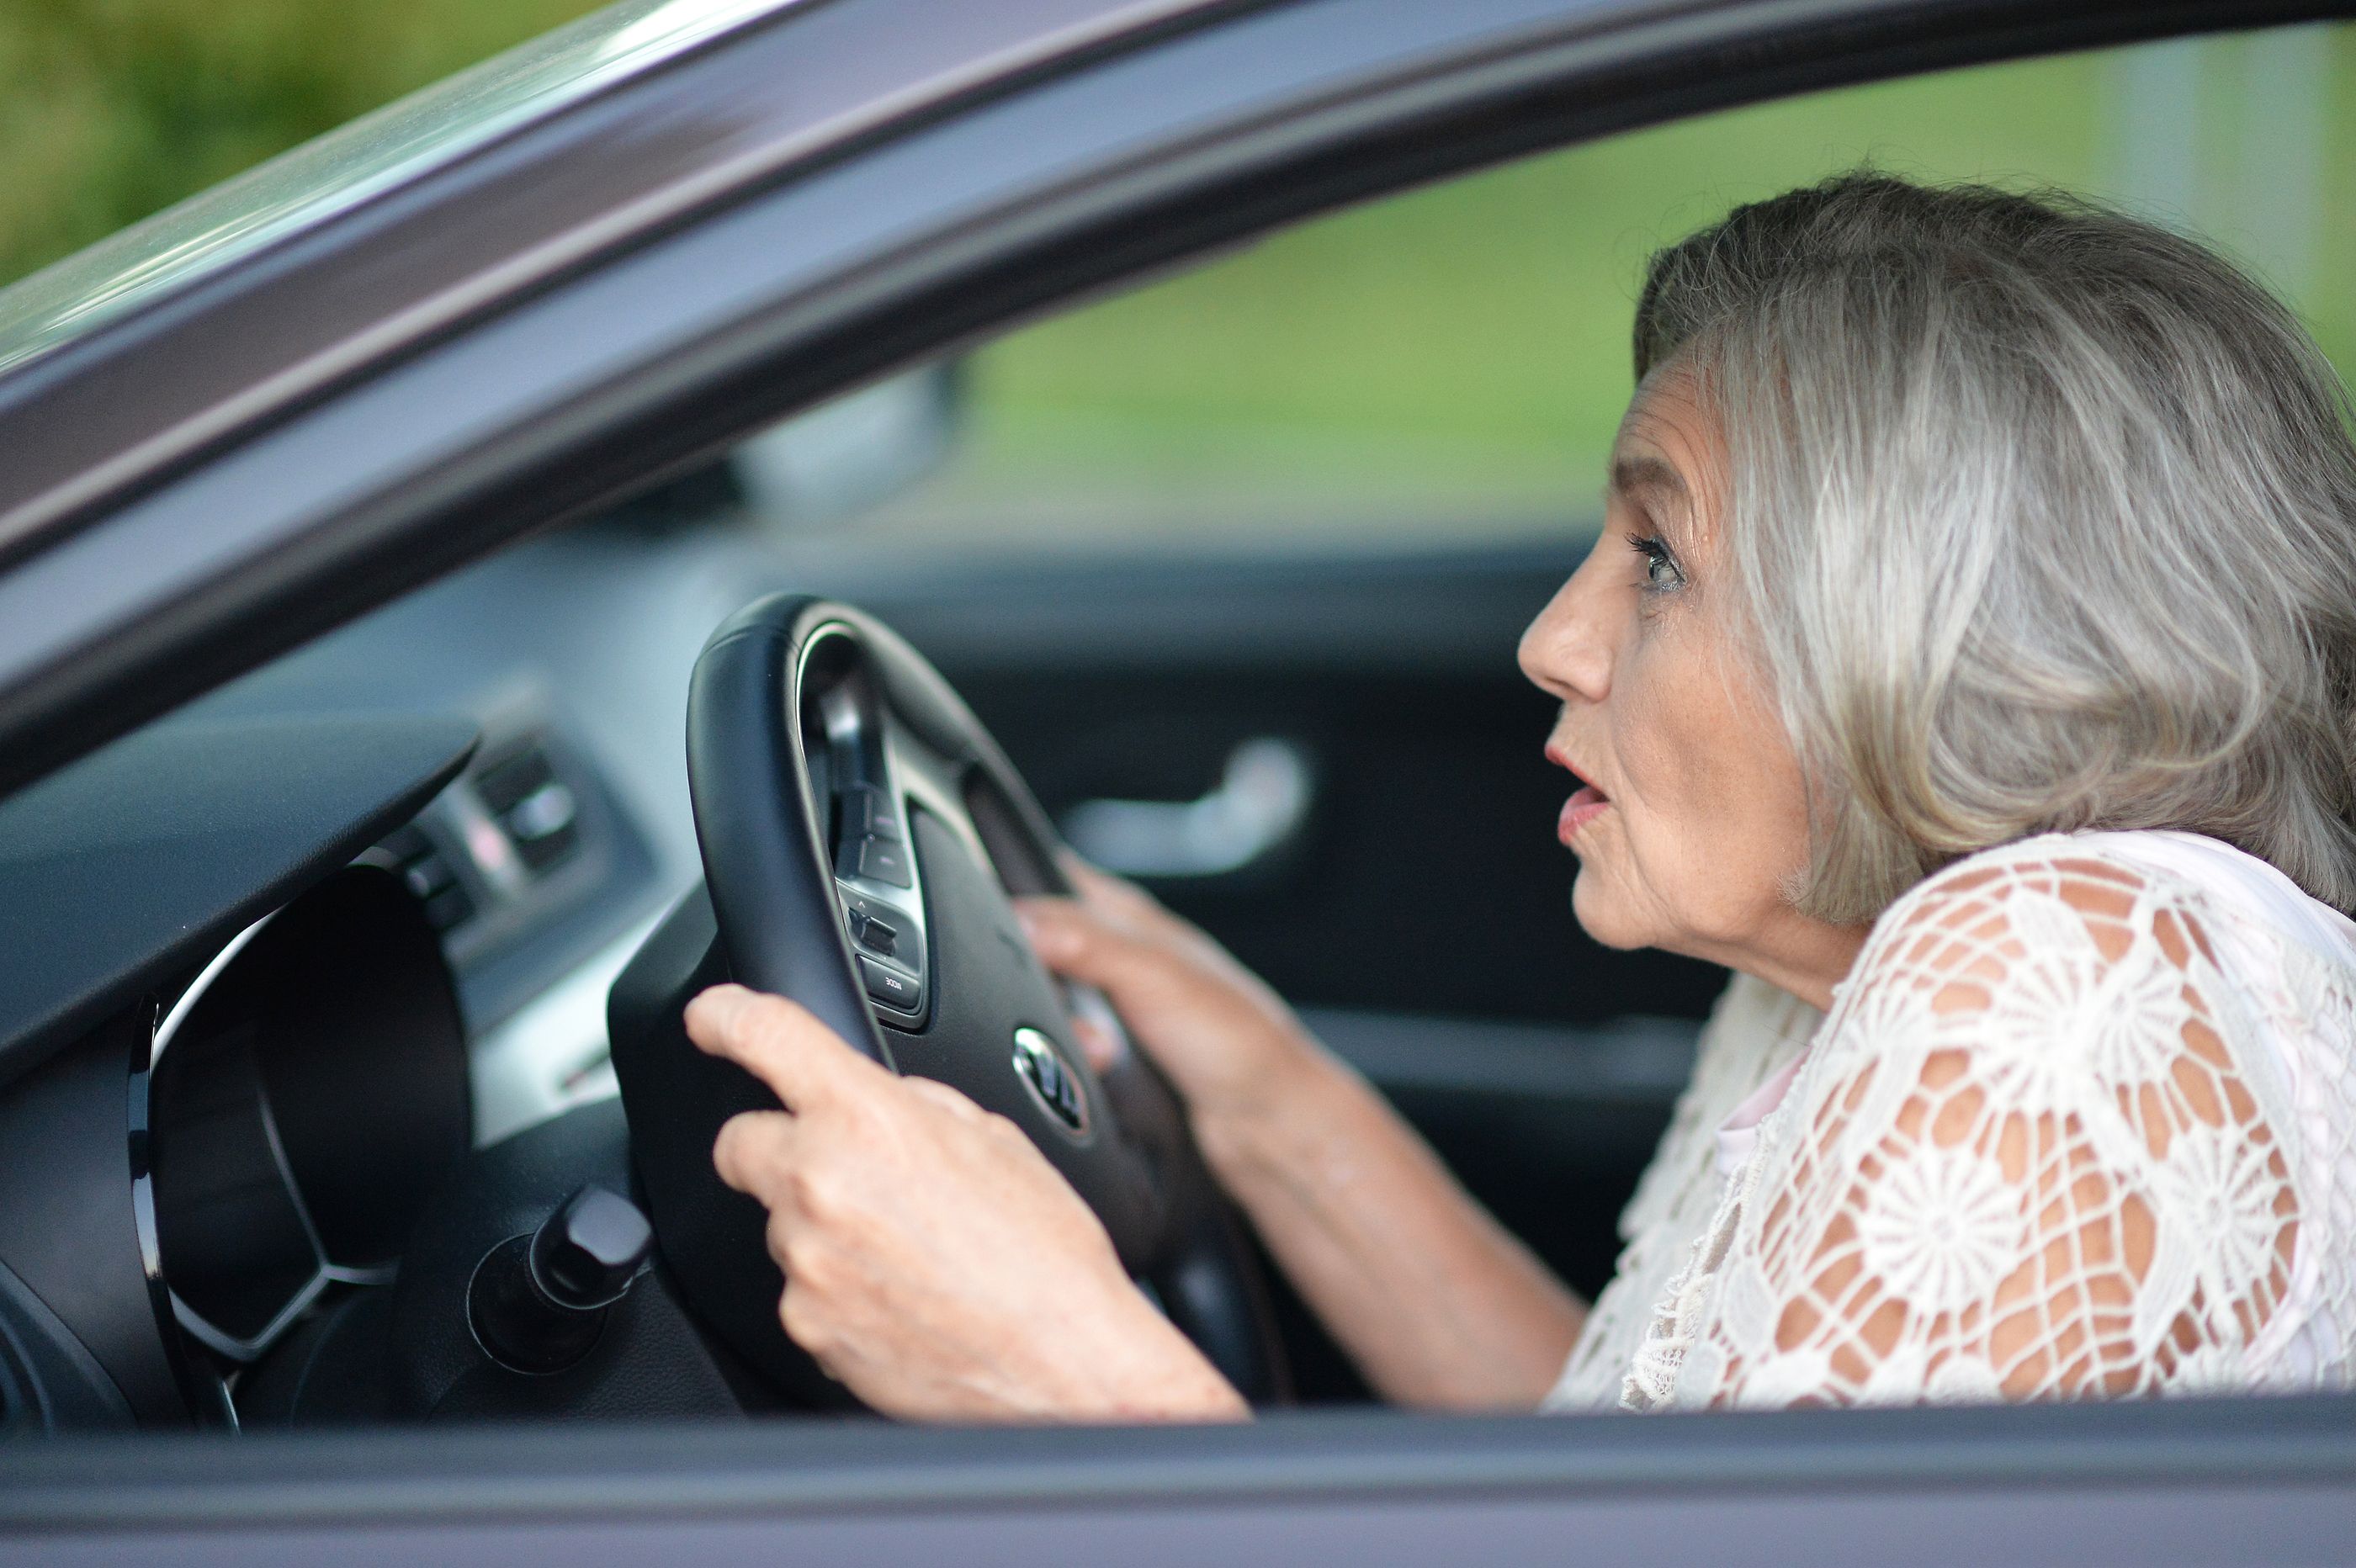 El miedo a conducir crece a medida que envejecemos